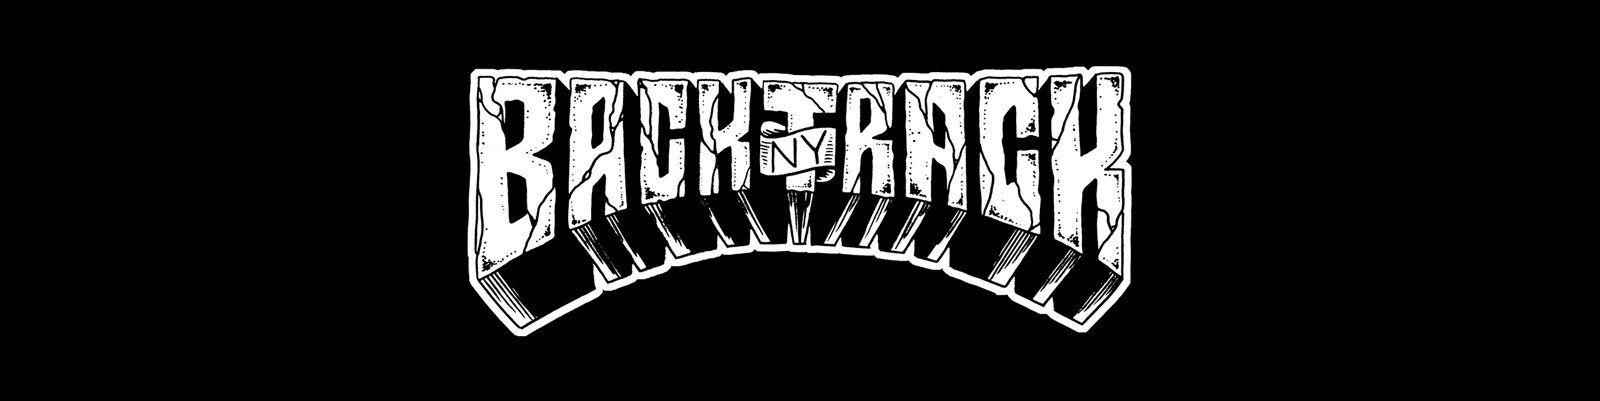 Backtrack Logo - Backtrack – Cold Cuts Merch